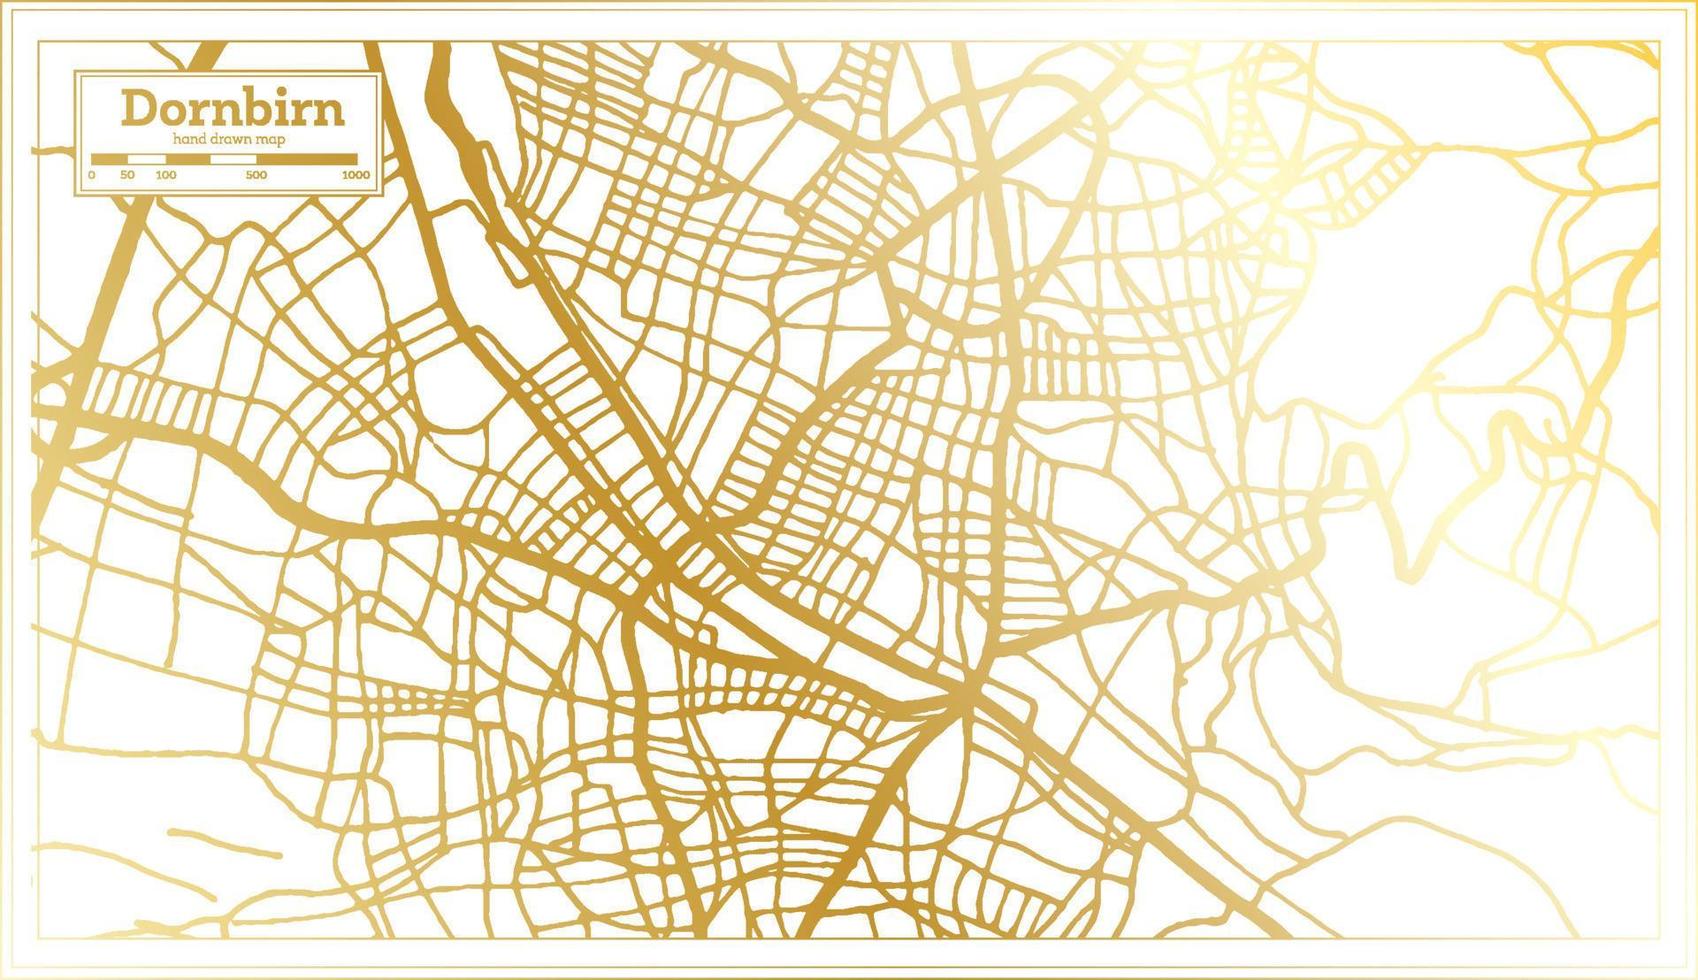 plan de la ville de dornbirn autriche dans un style rétro de couleur dorée. carte muette. vecteur